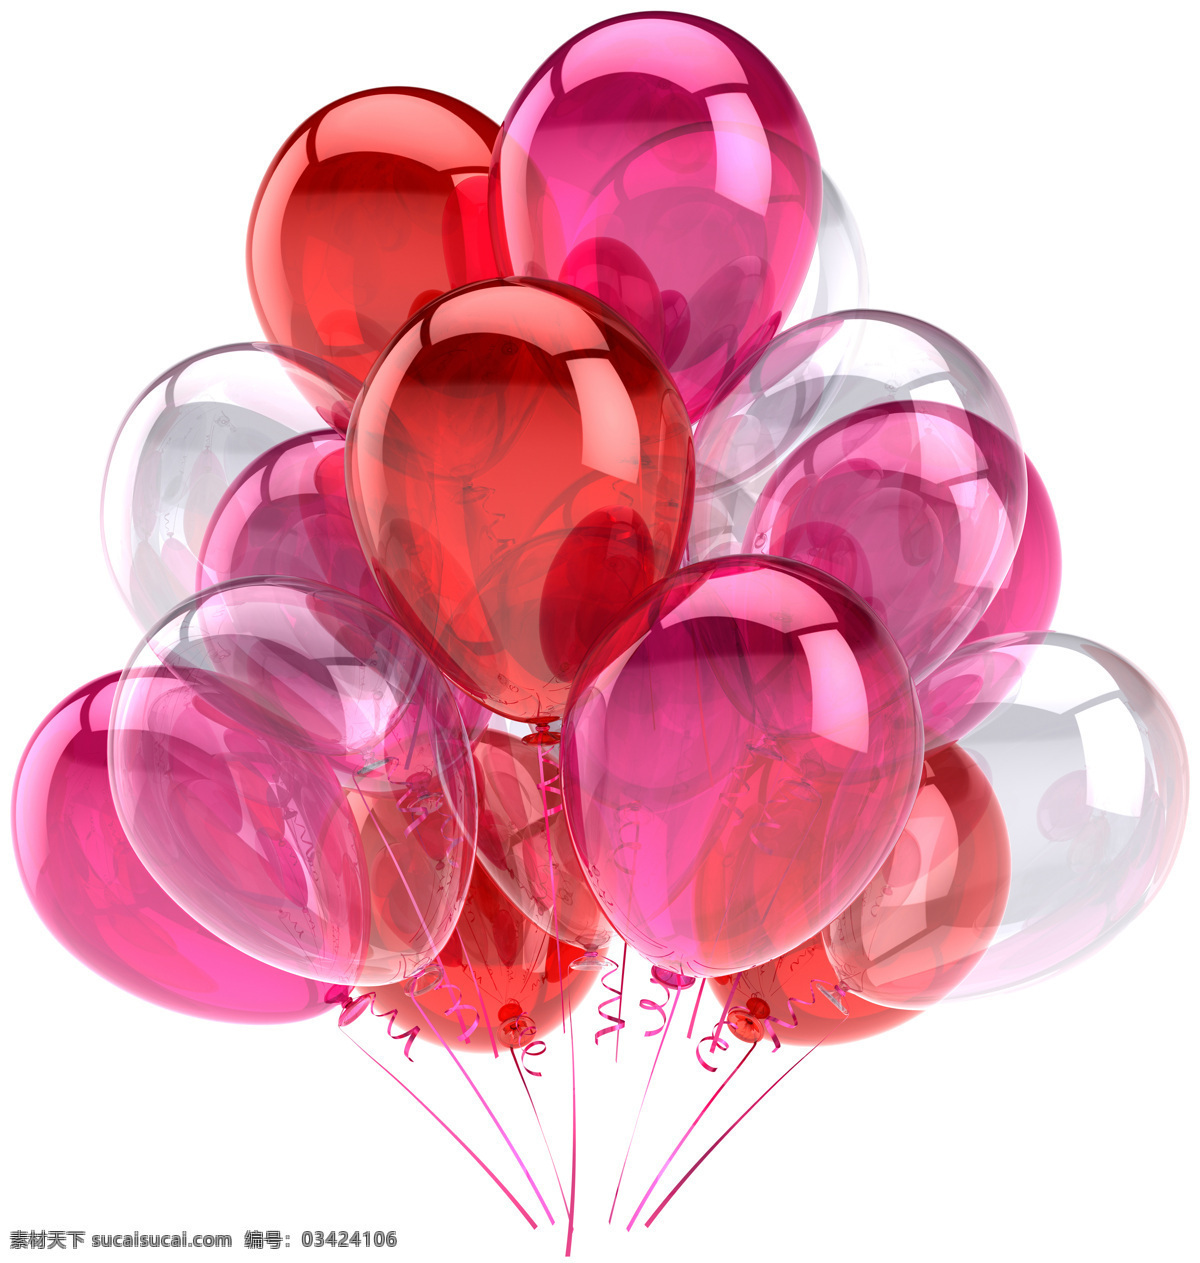 彩色 气球 彩色气球 彩球 节日气球 节日彩球 节日素材 节日庆祝 3d设计 其他类别 生活百科